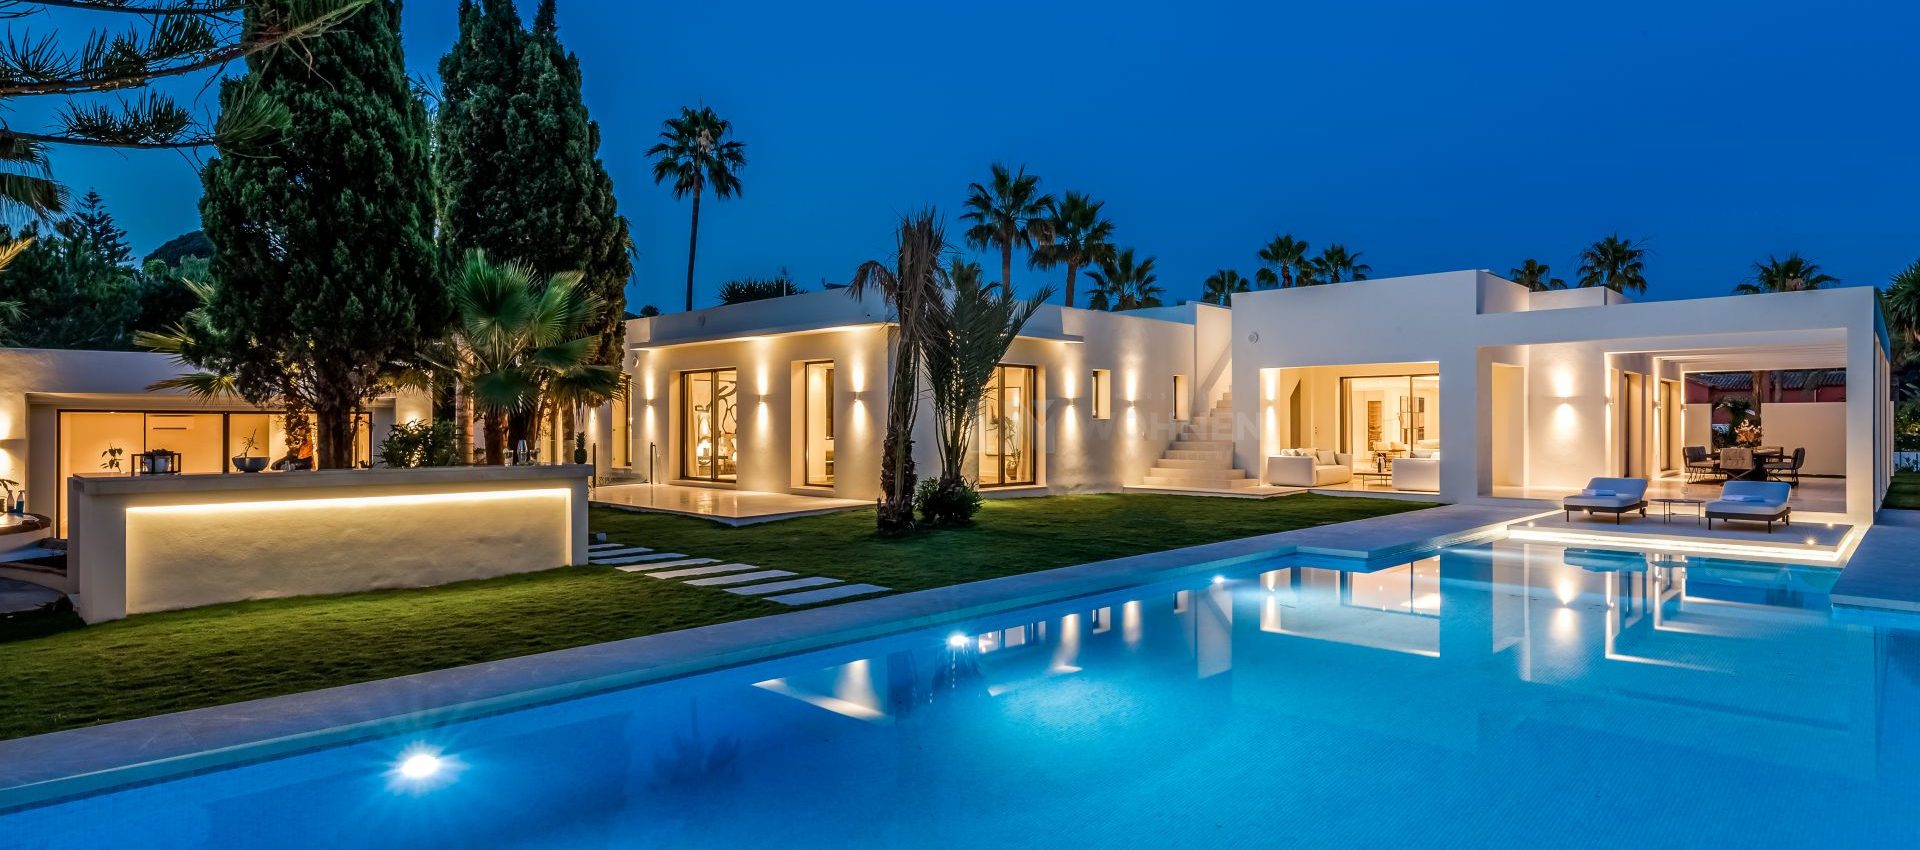 Un nuevo concepto de vida de lujo junto a la playa – Marbella